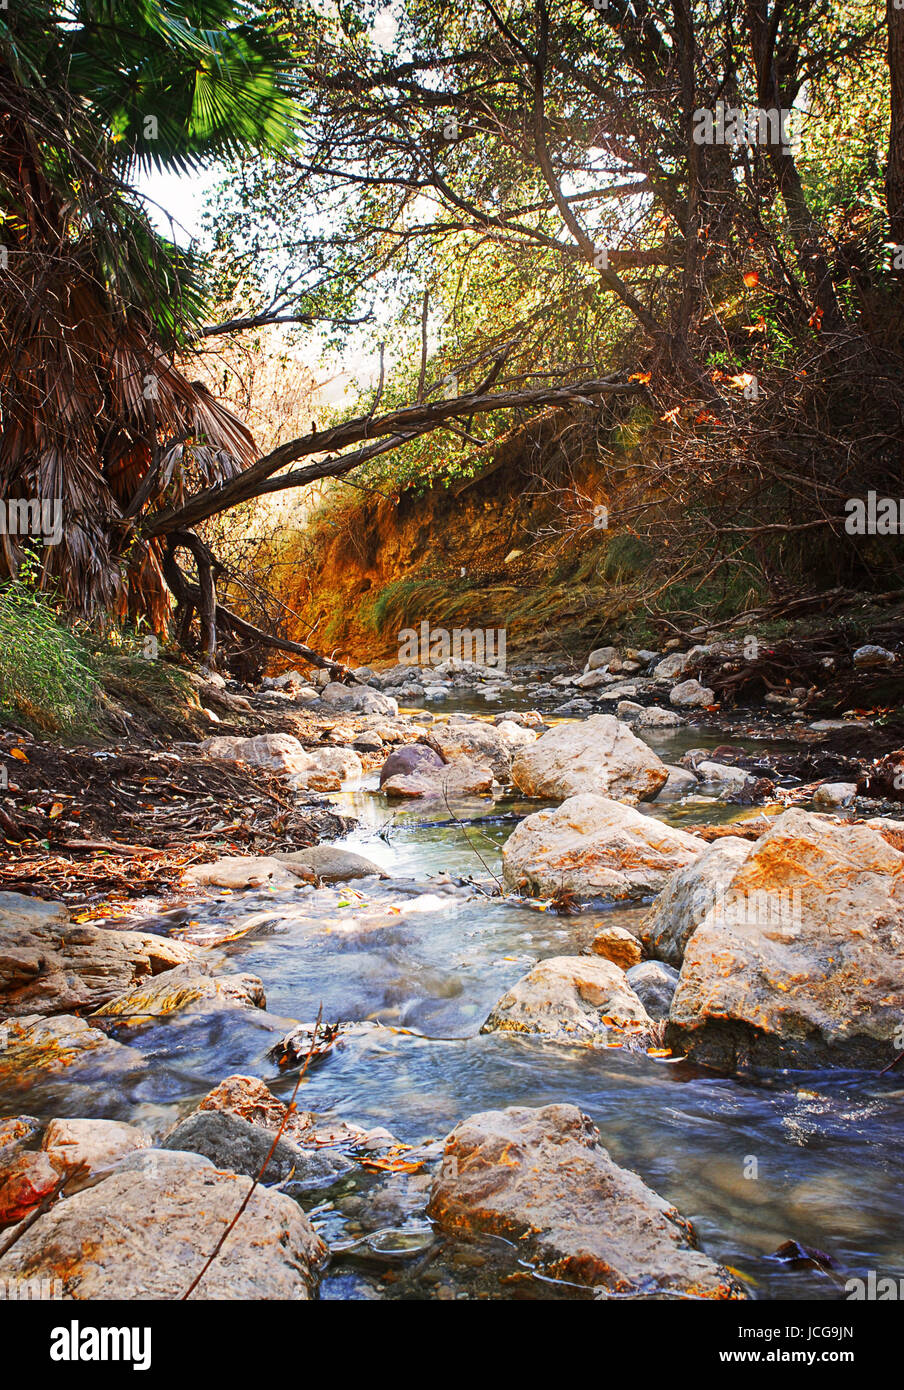 Avvolgimento roccioso in streaming in foresta con rusty arancio su rocce Foto Stock